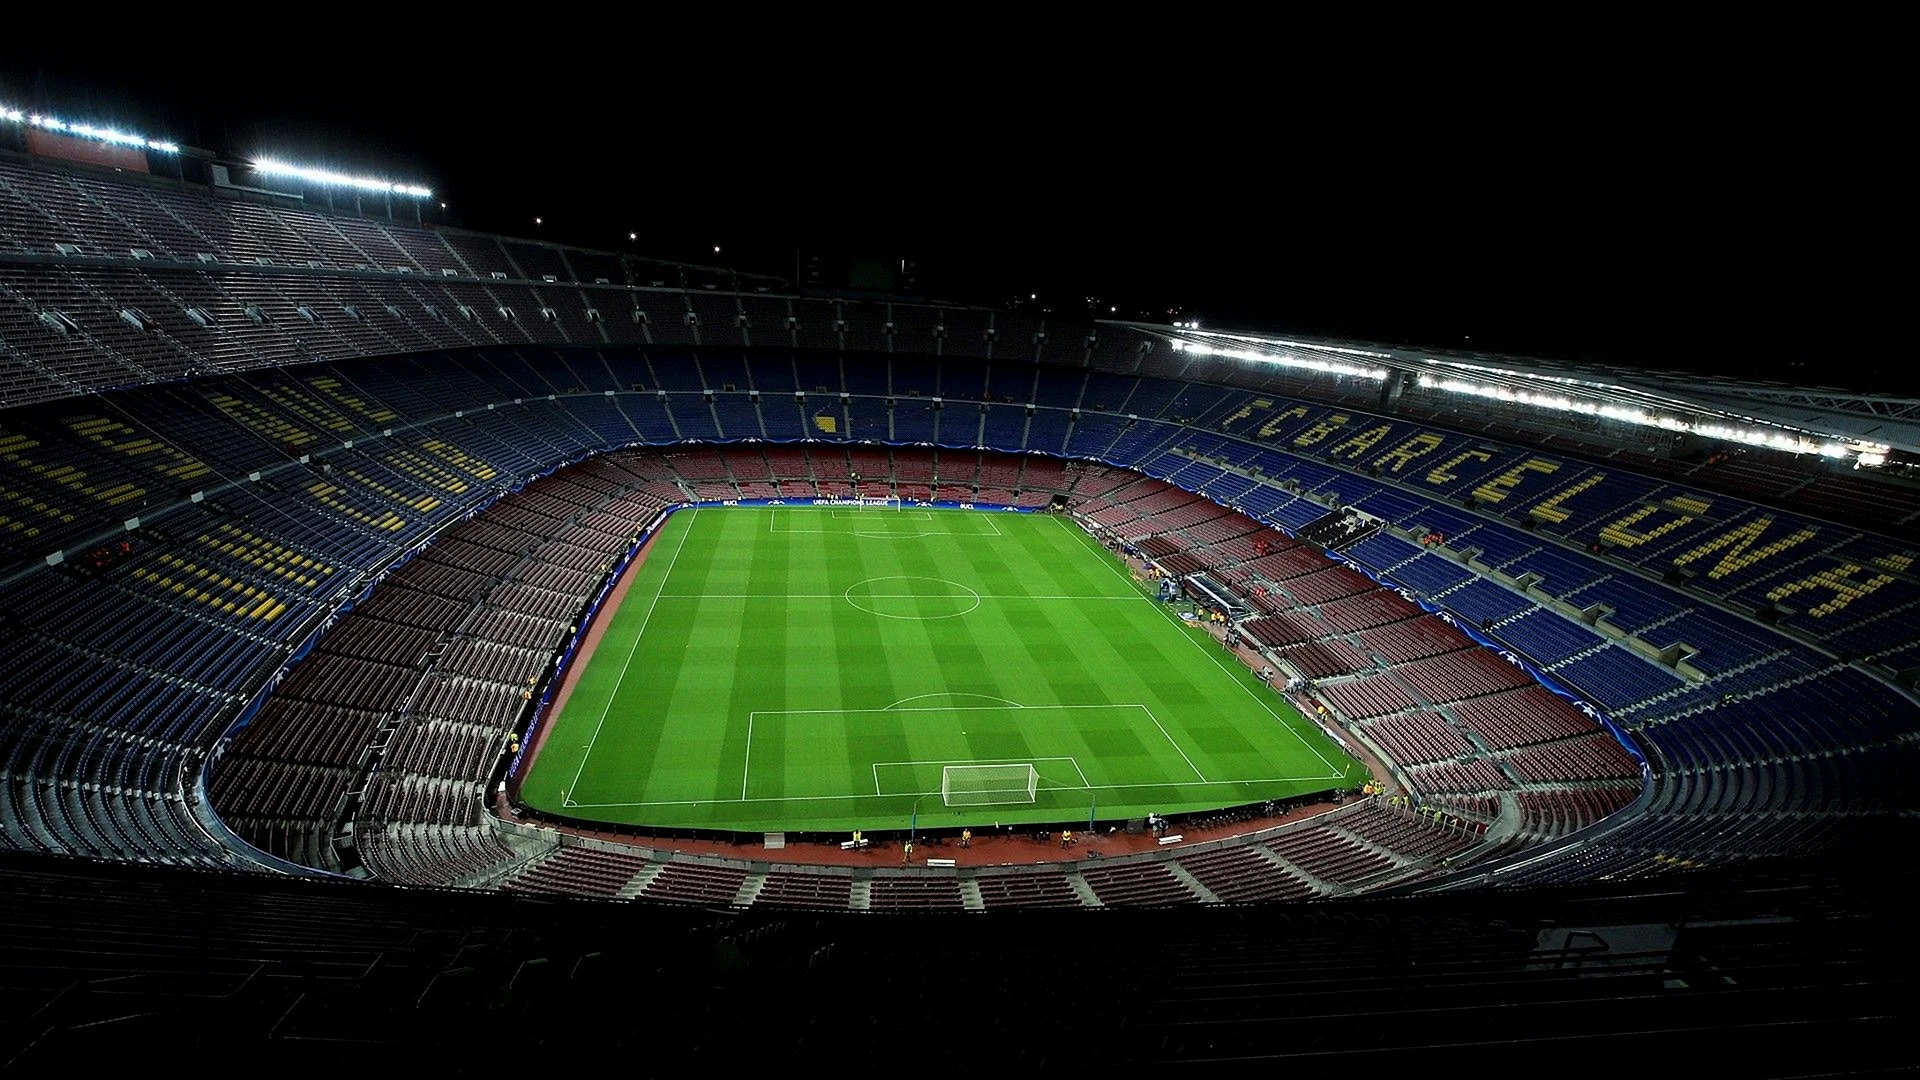 Ну стадион. Барселона Камп ноу. Камп ноу стадион. Стадион Барселоны. Ювентус Стэдиум стадион лига чемпионов.